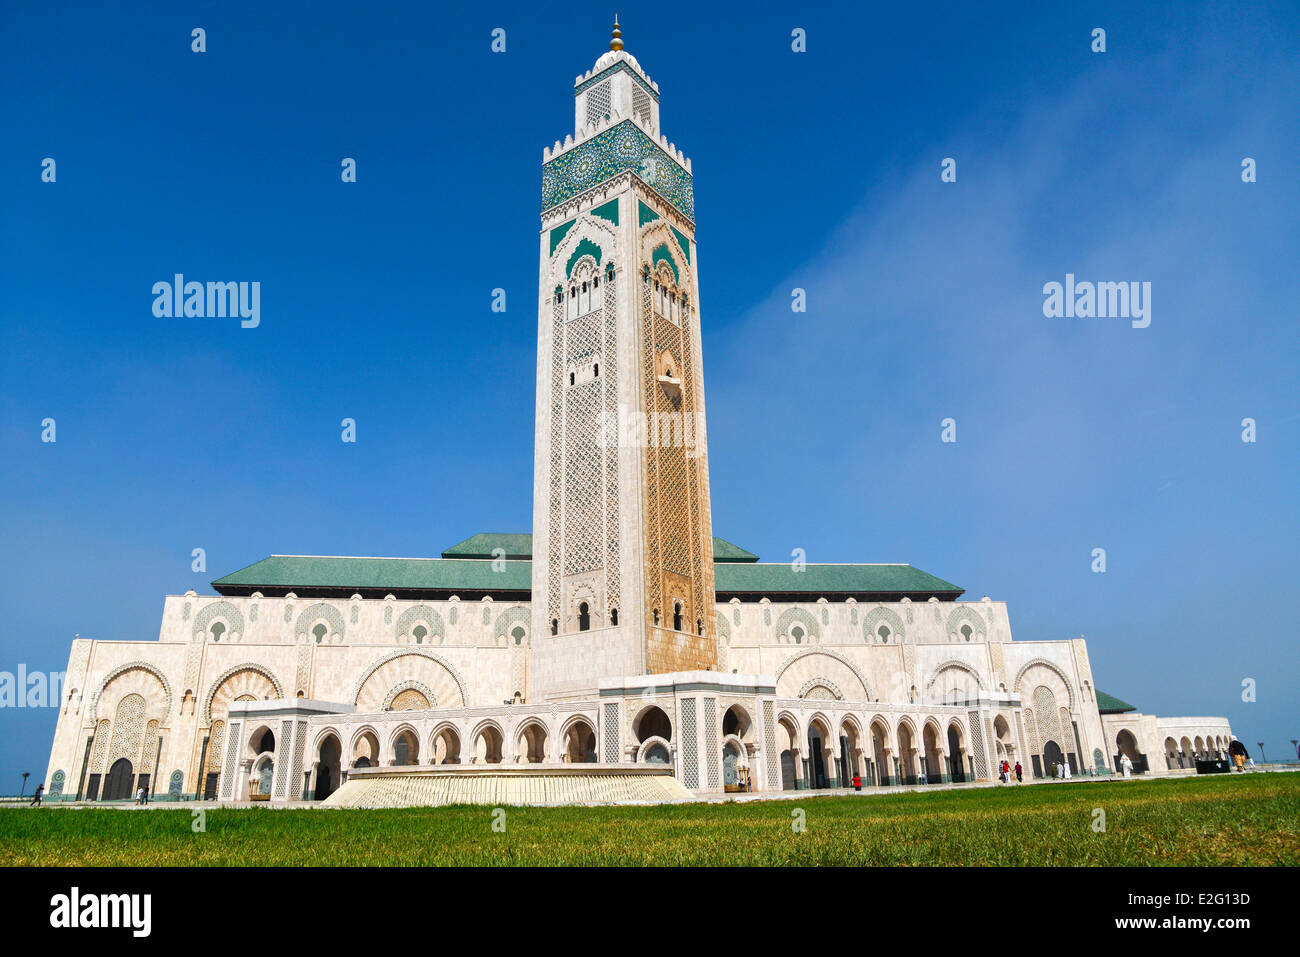 Marruecos Casablanca Gran Mezquita Hassan II, de estilo árabe musulmán construido por el arquitecto Michel Pinseau en 1986 que posee el Foto de stock